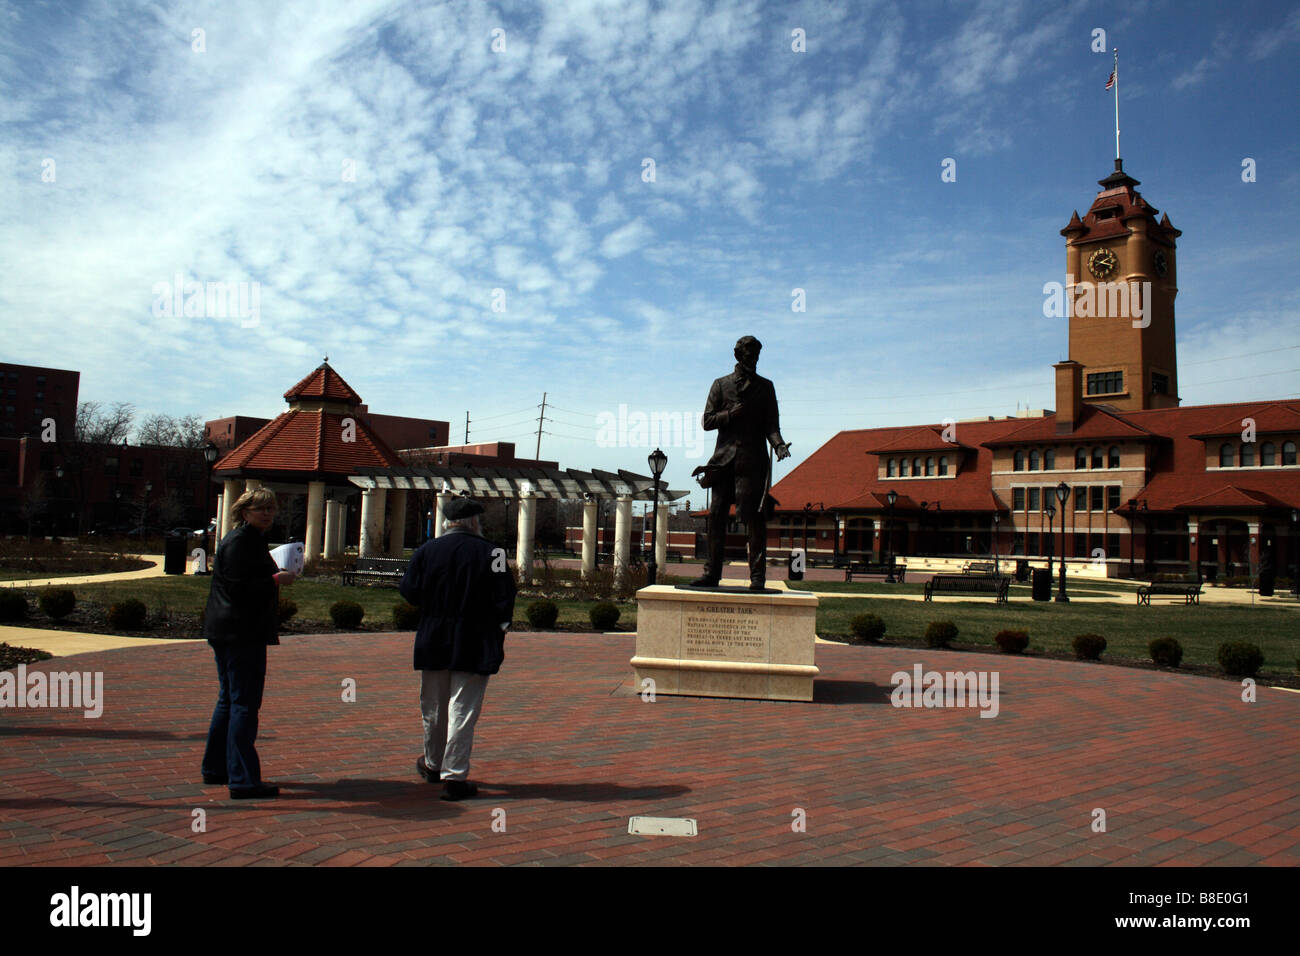 Fußgänger im Union Square Park mit Clocktower und Abraham Lincoln-Statue. Stockfoto